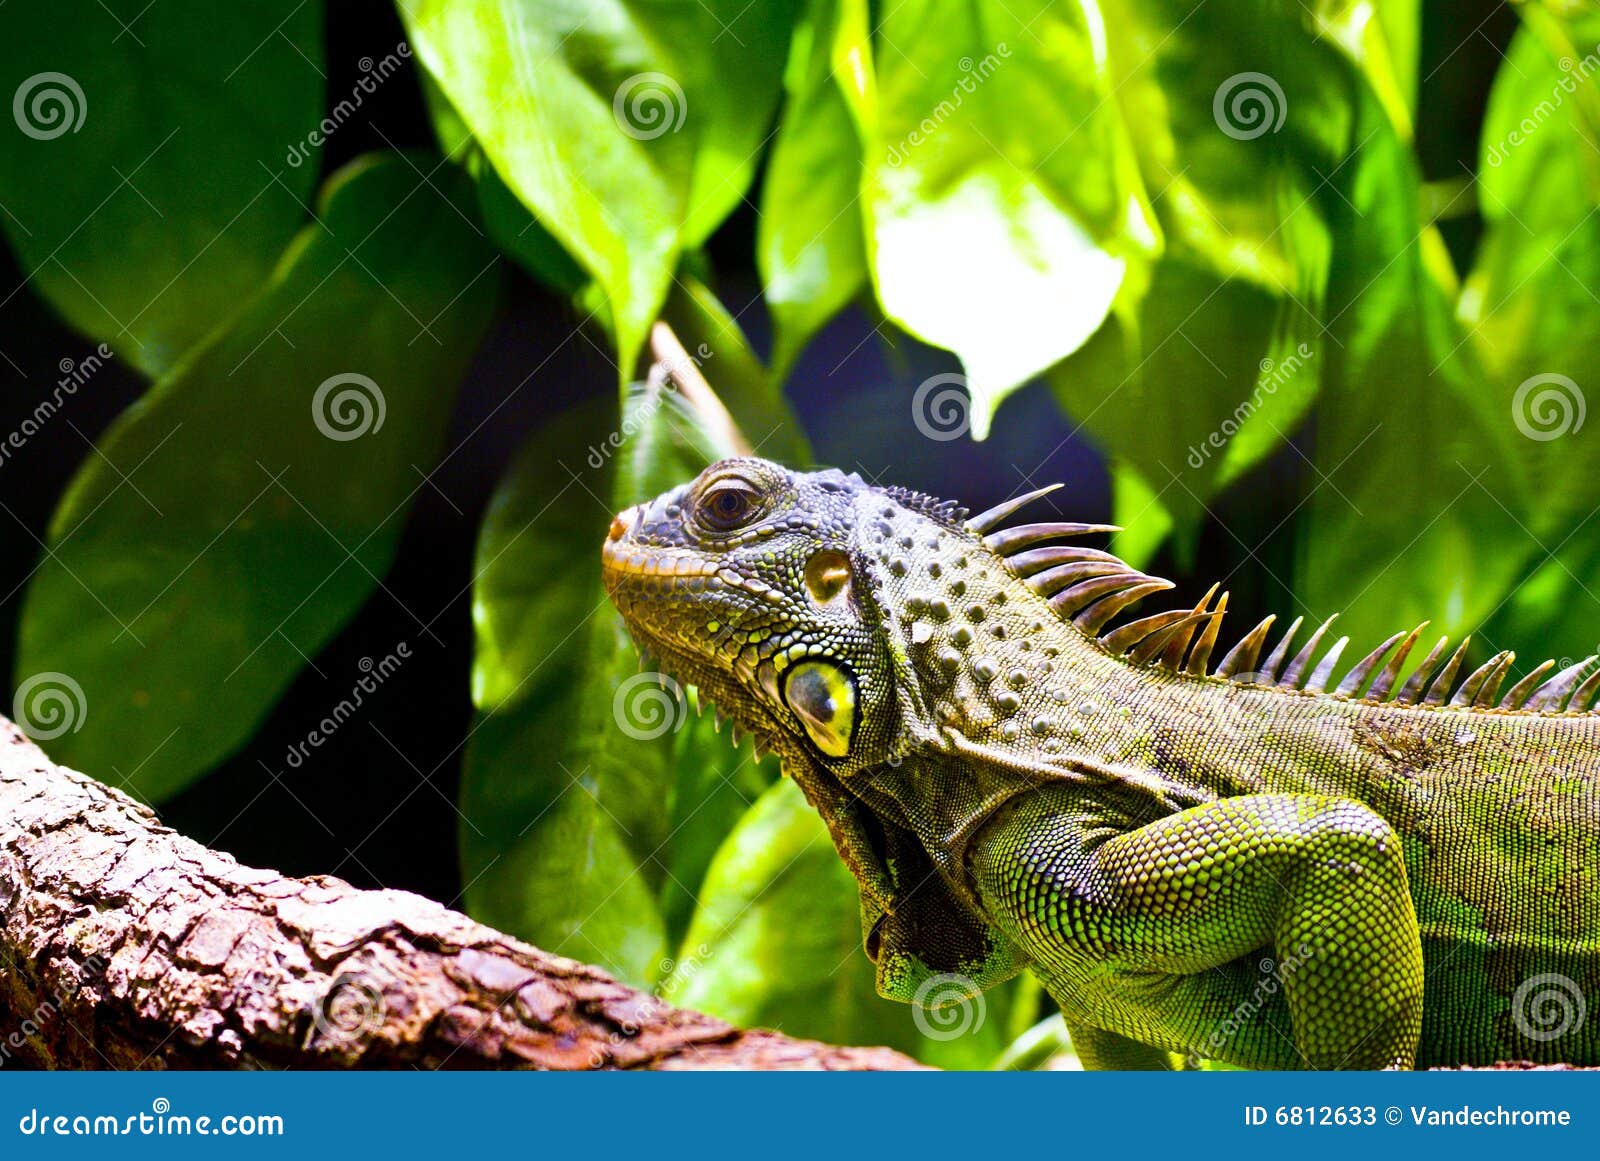 iguana y su habitat